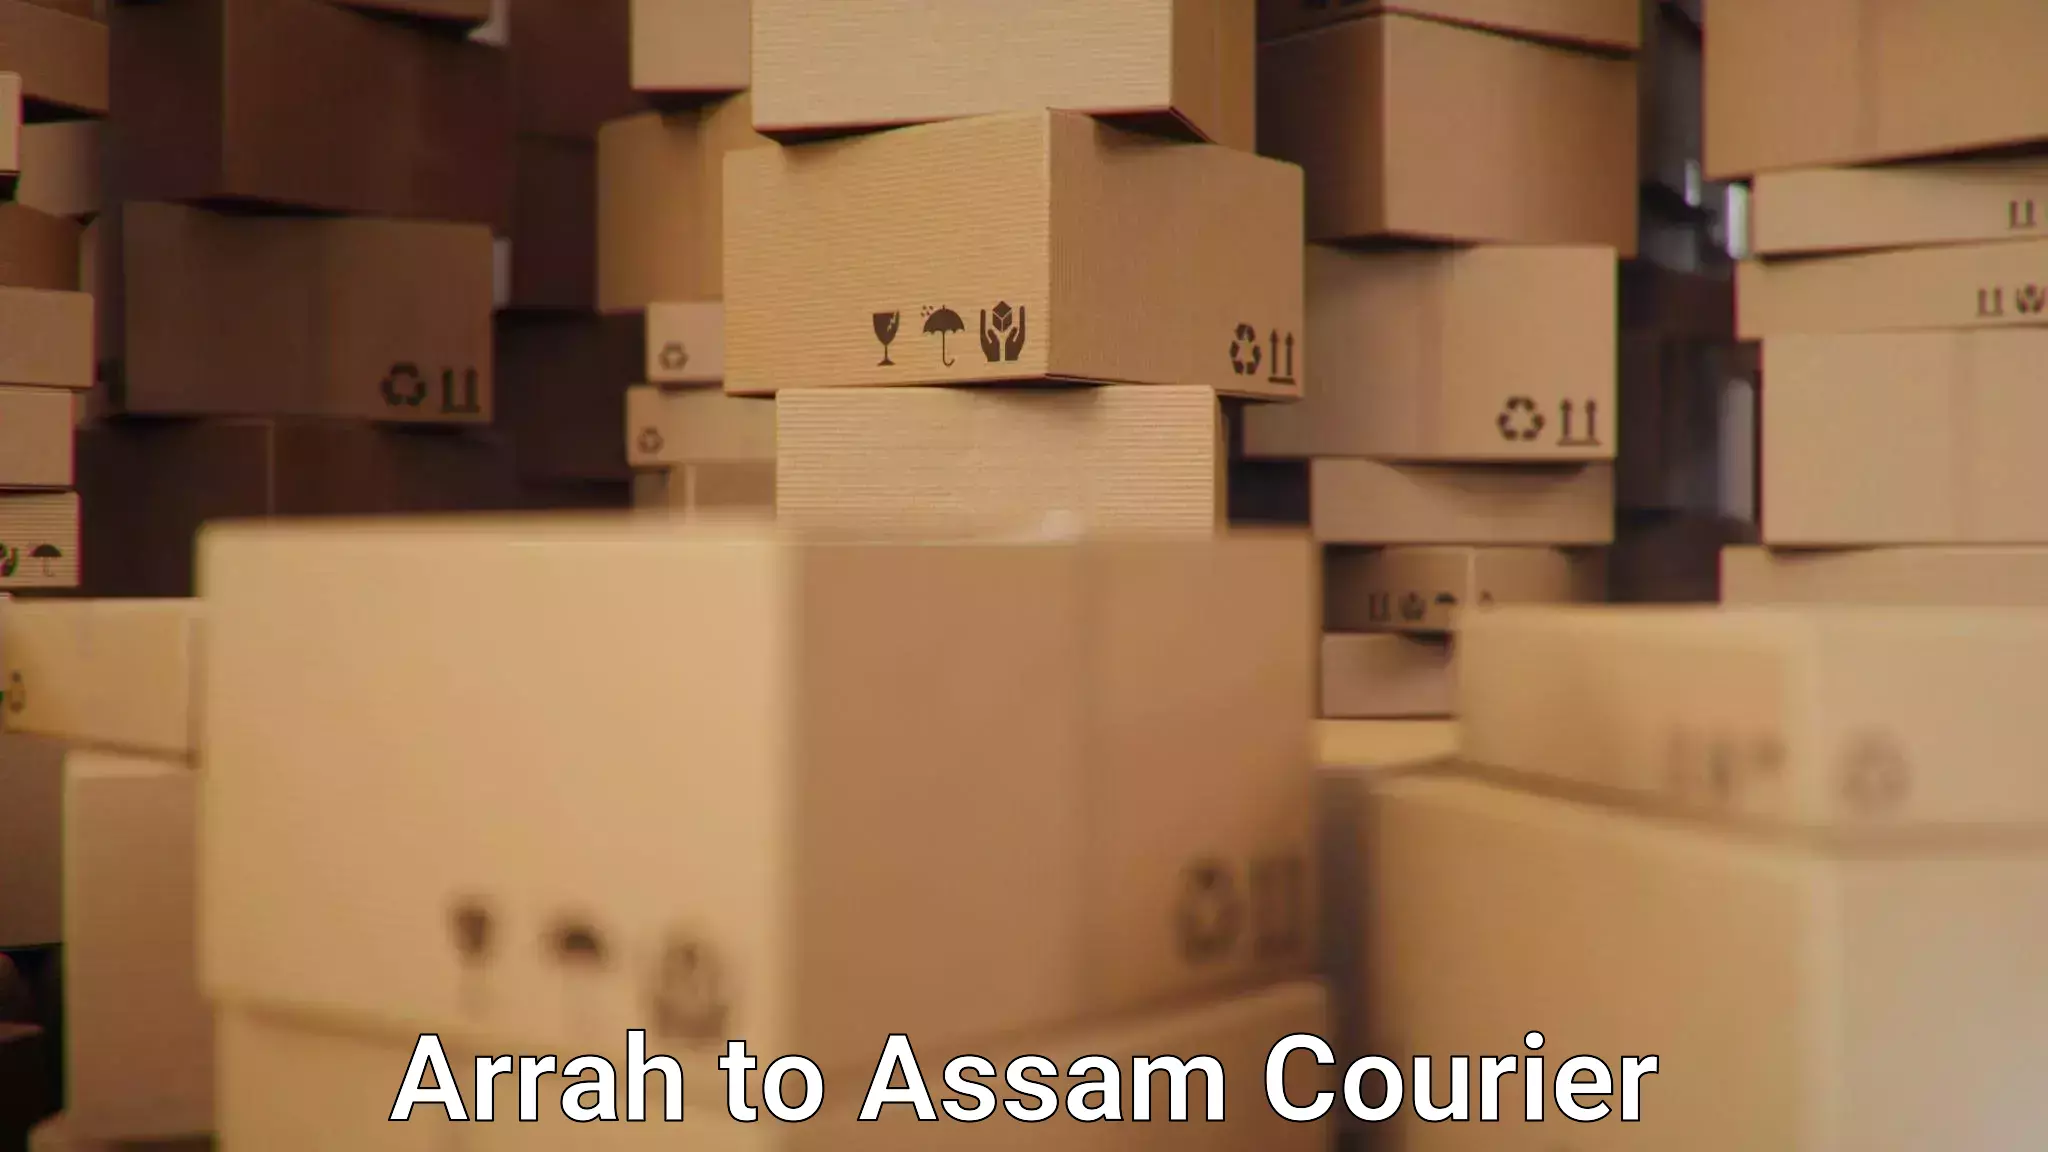 User-friendly courier app Arrah to Jamuguri